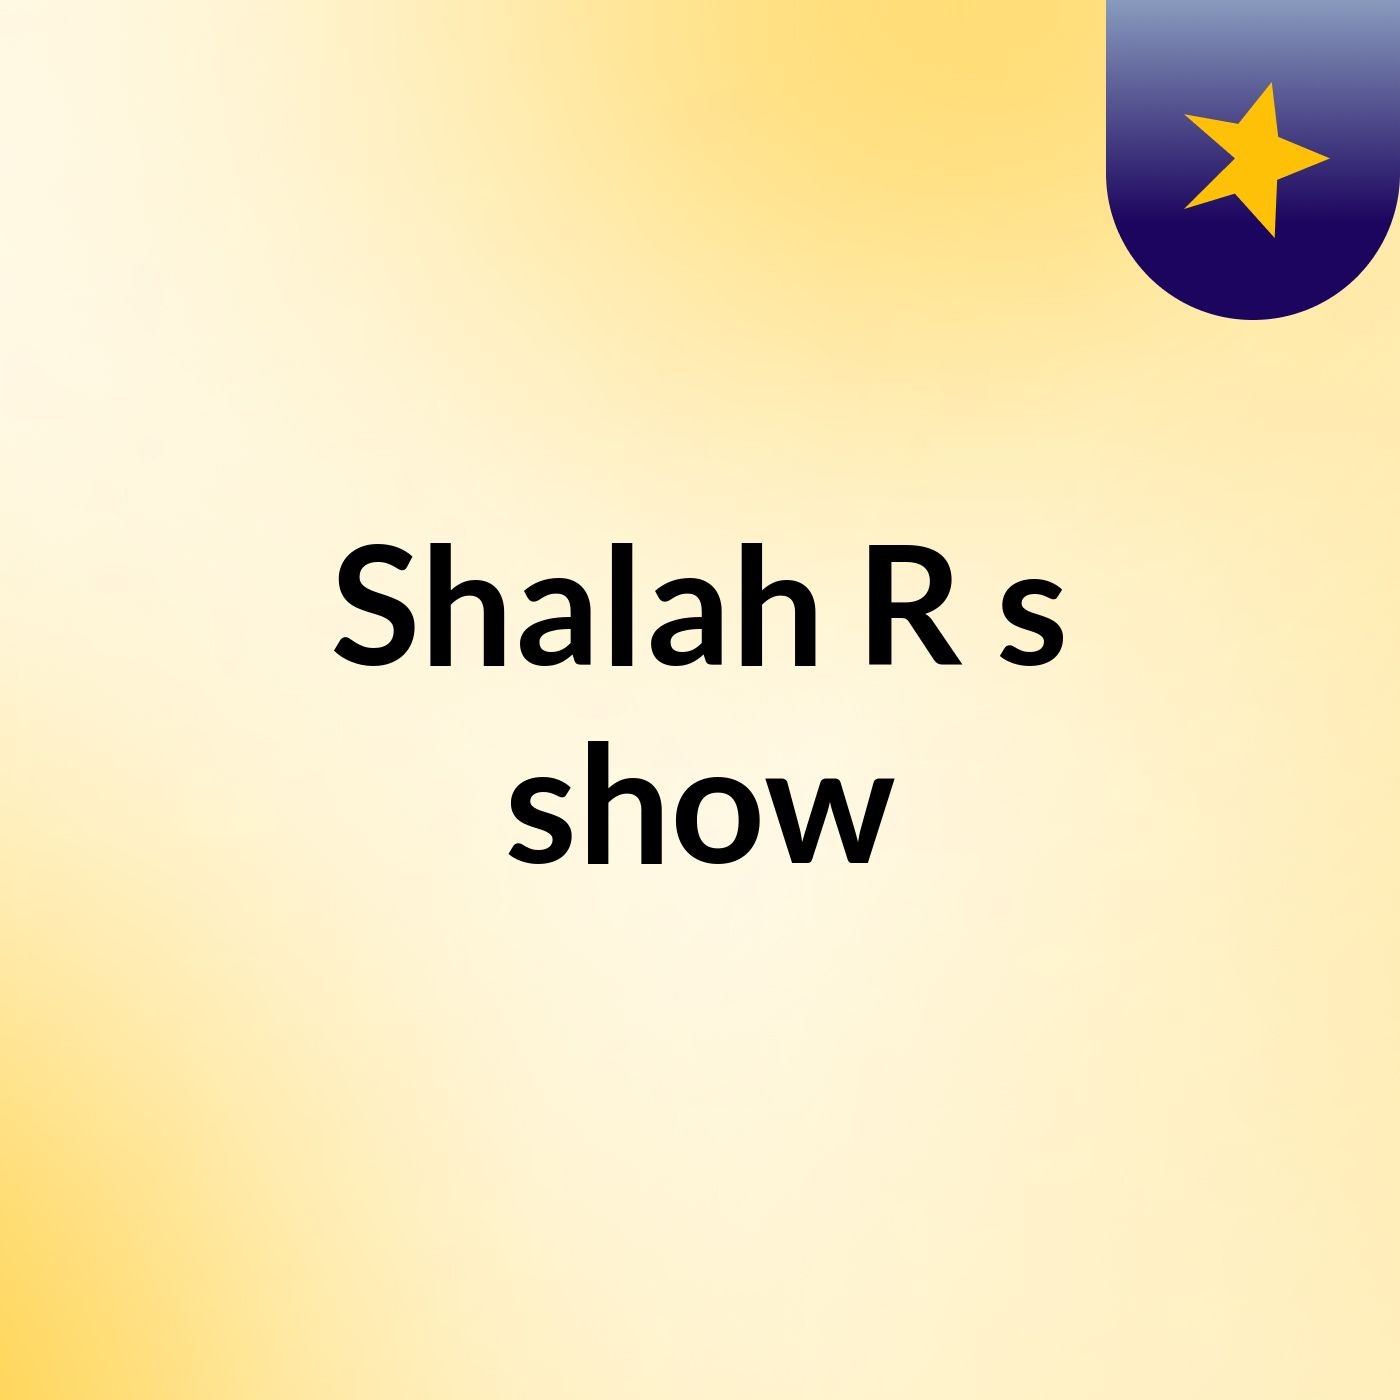 Shalah R's show